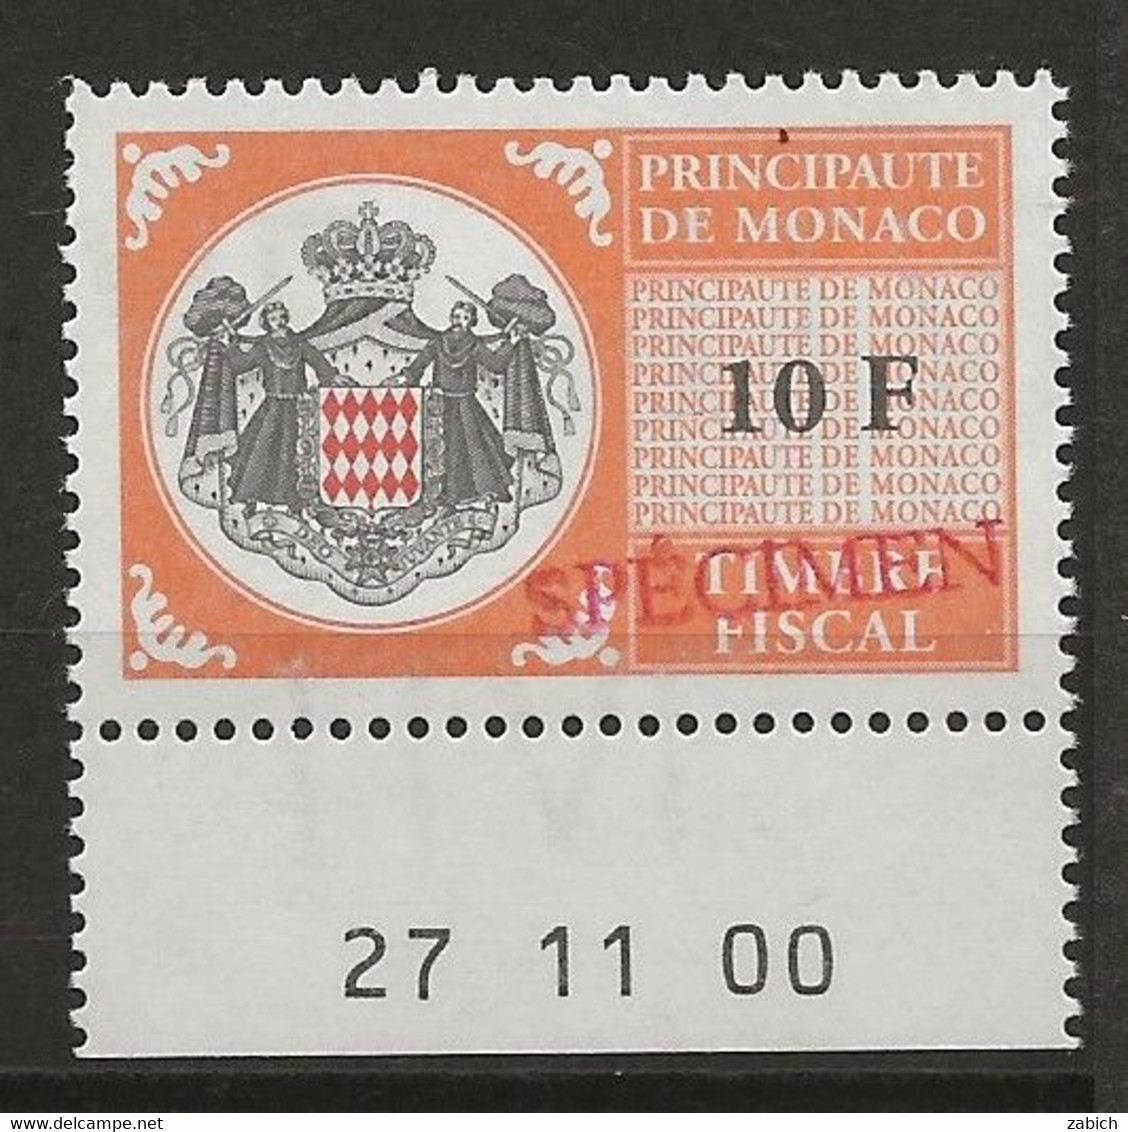 FISCAUX DE MONACO SERIE UNIFIEE N° 102 10Forange Rare Coin Daté Du 27 11 00 Surchargé Spécimen Neuf Gomme Mnh (**) - Fiscales